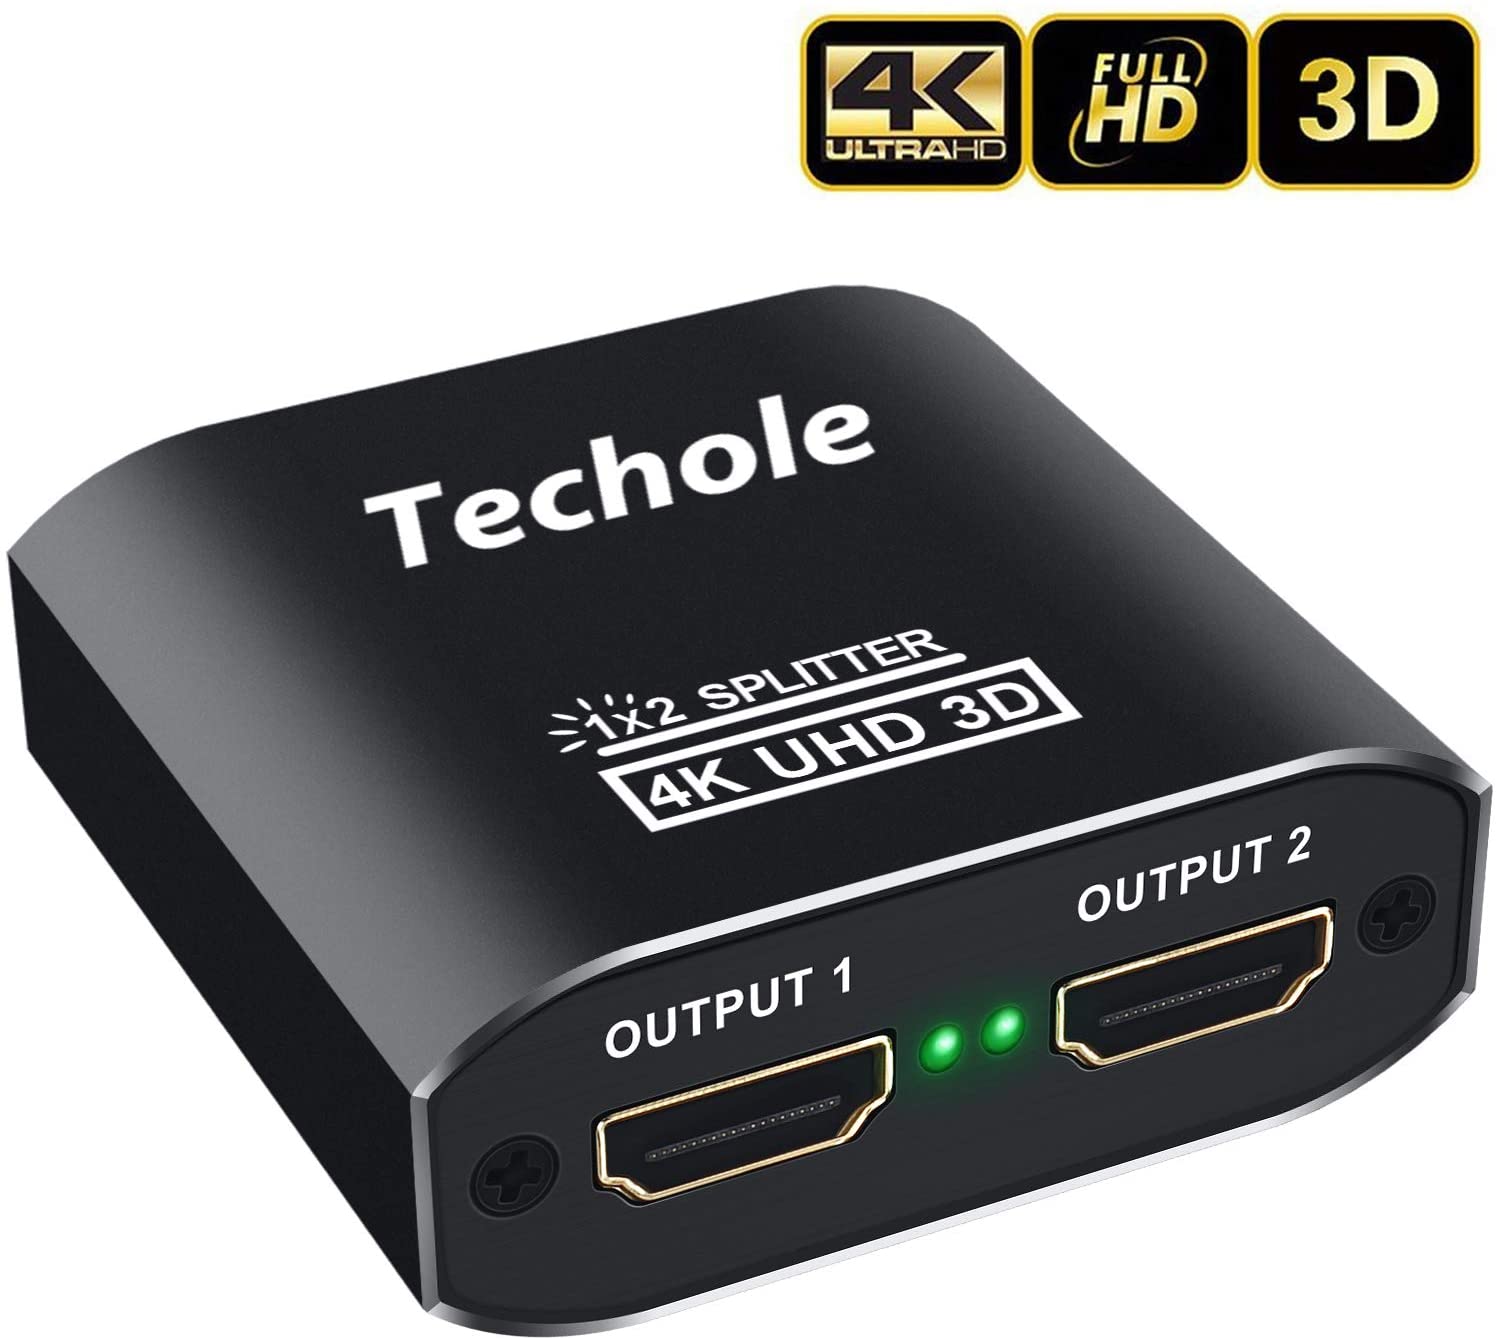 Techole HDMI Splitter